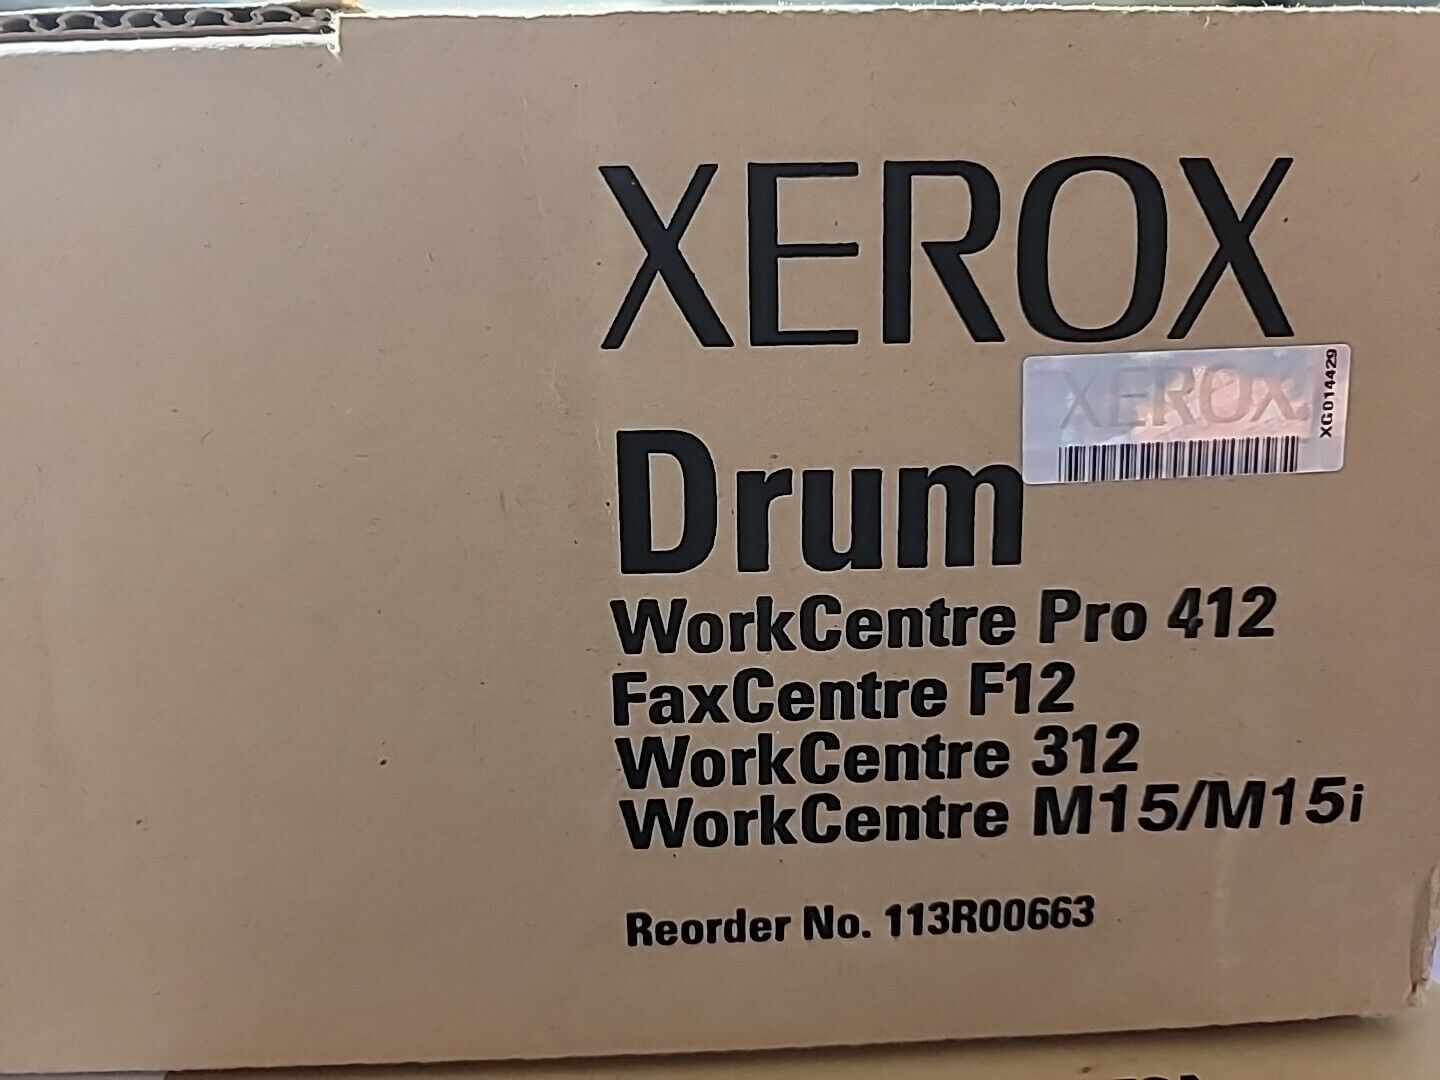 XEROX DRUM WORKCENTRE PRO 412 FAX CENTRE F12 WORK CENTRE 312 M15/M15i NEW